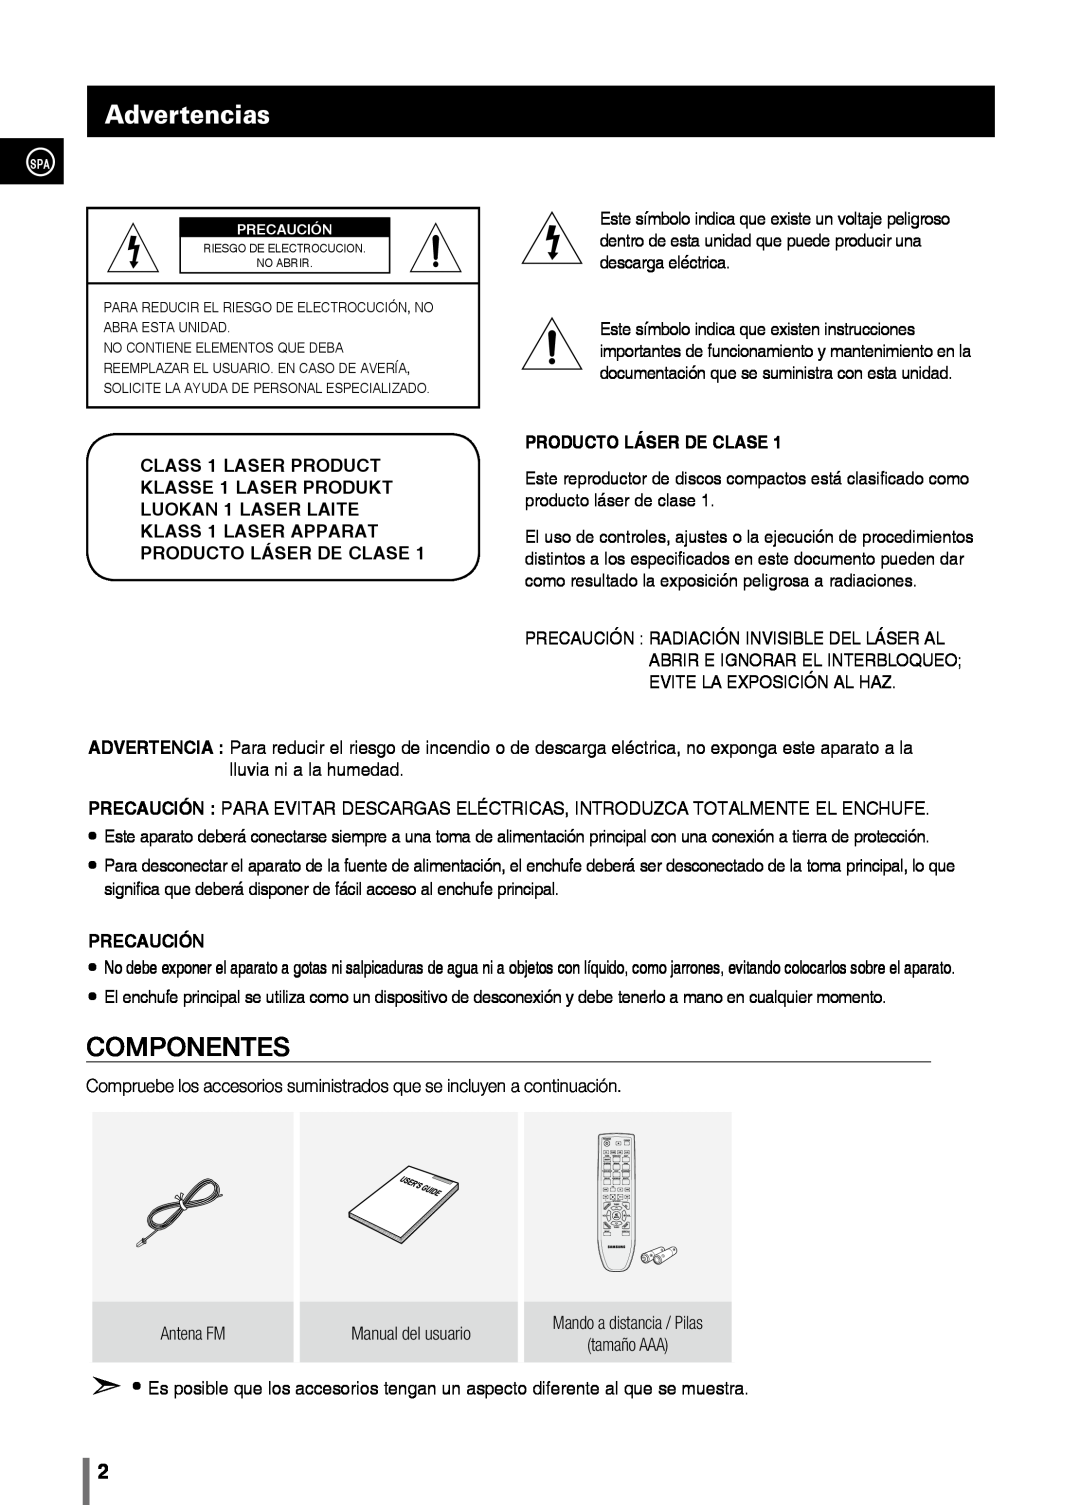 Samsung MM-C330/XEF manual Advertencias, producto láser de clase, Precaución, Componentes 